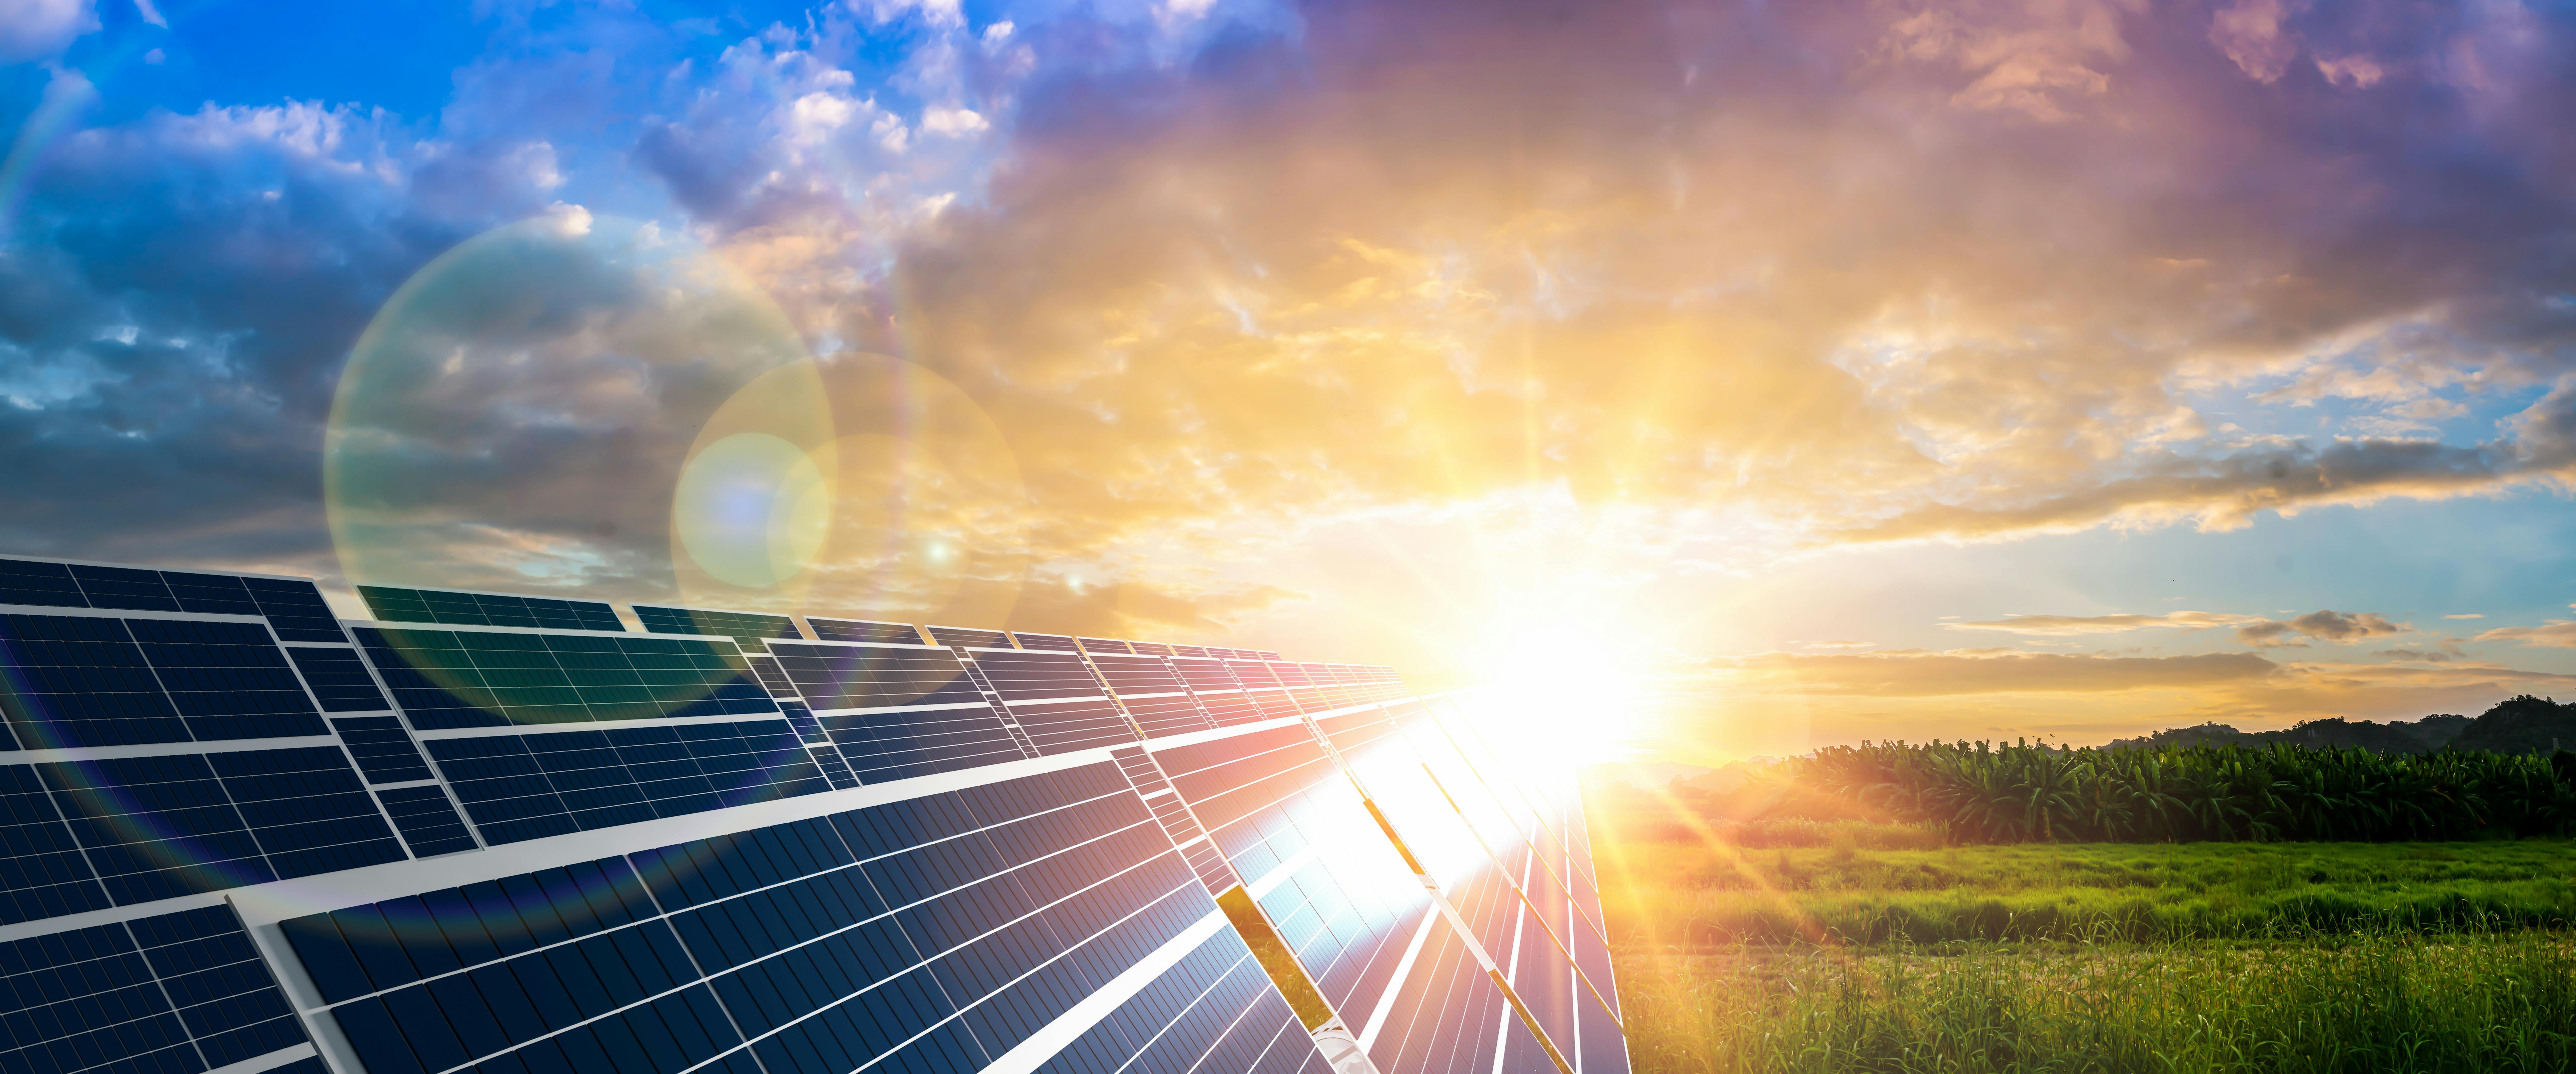 Des panneaux solaires qui produisent de l'électricité grâce à l'énergie du soleil